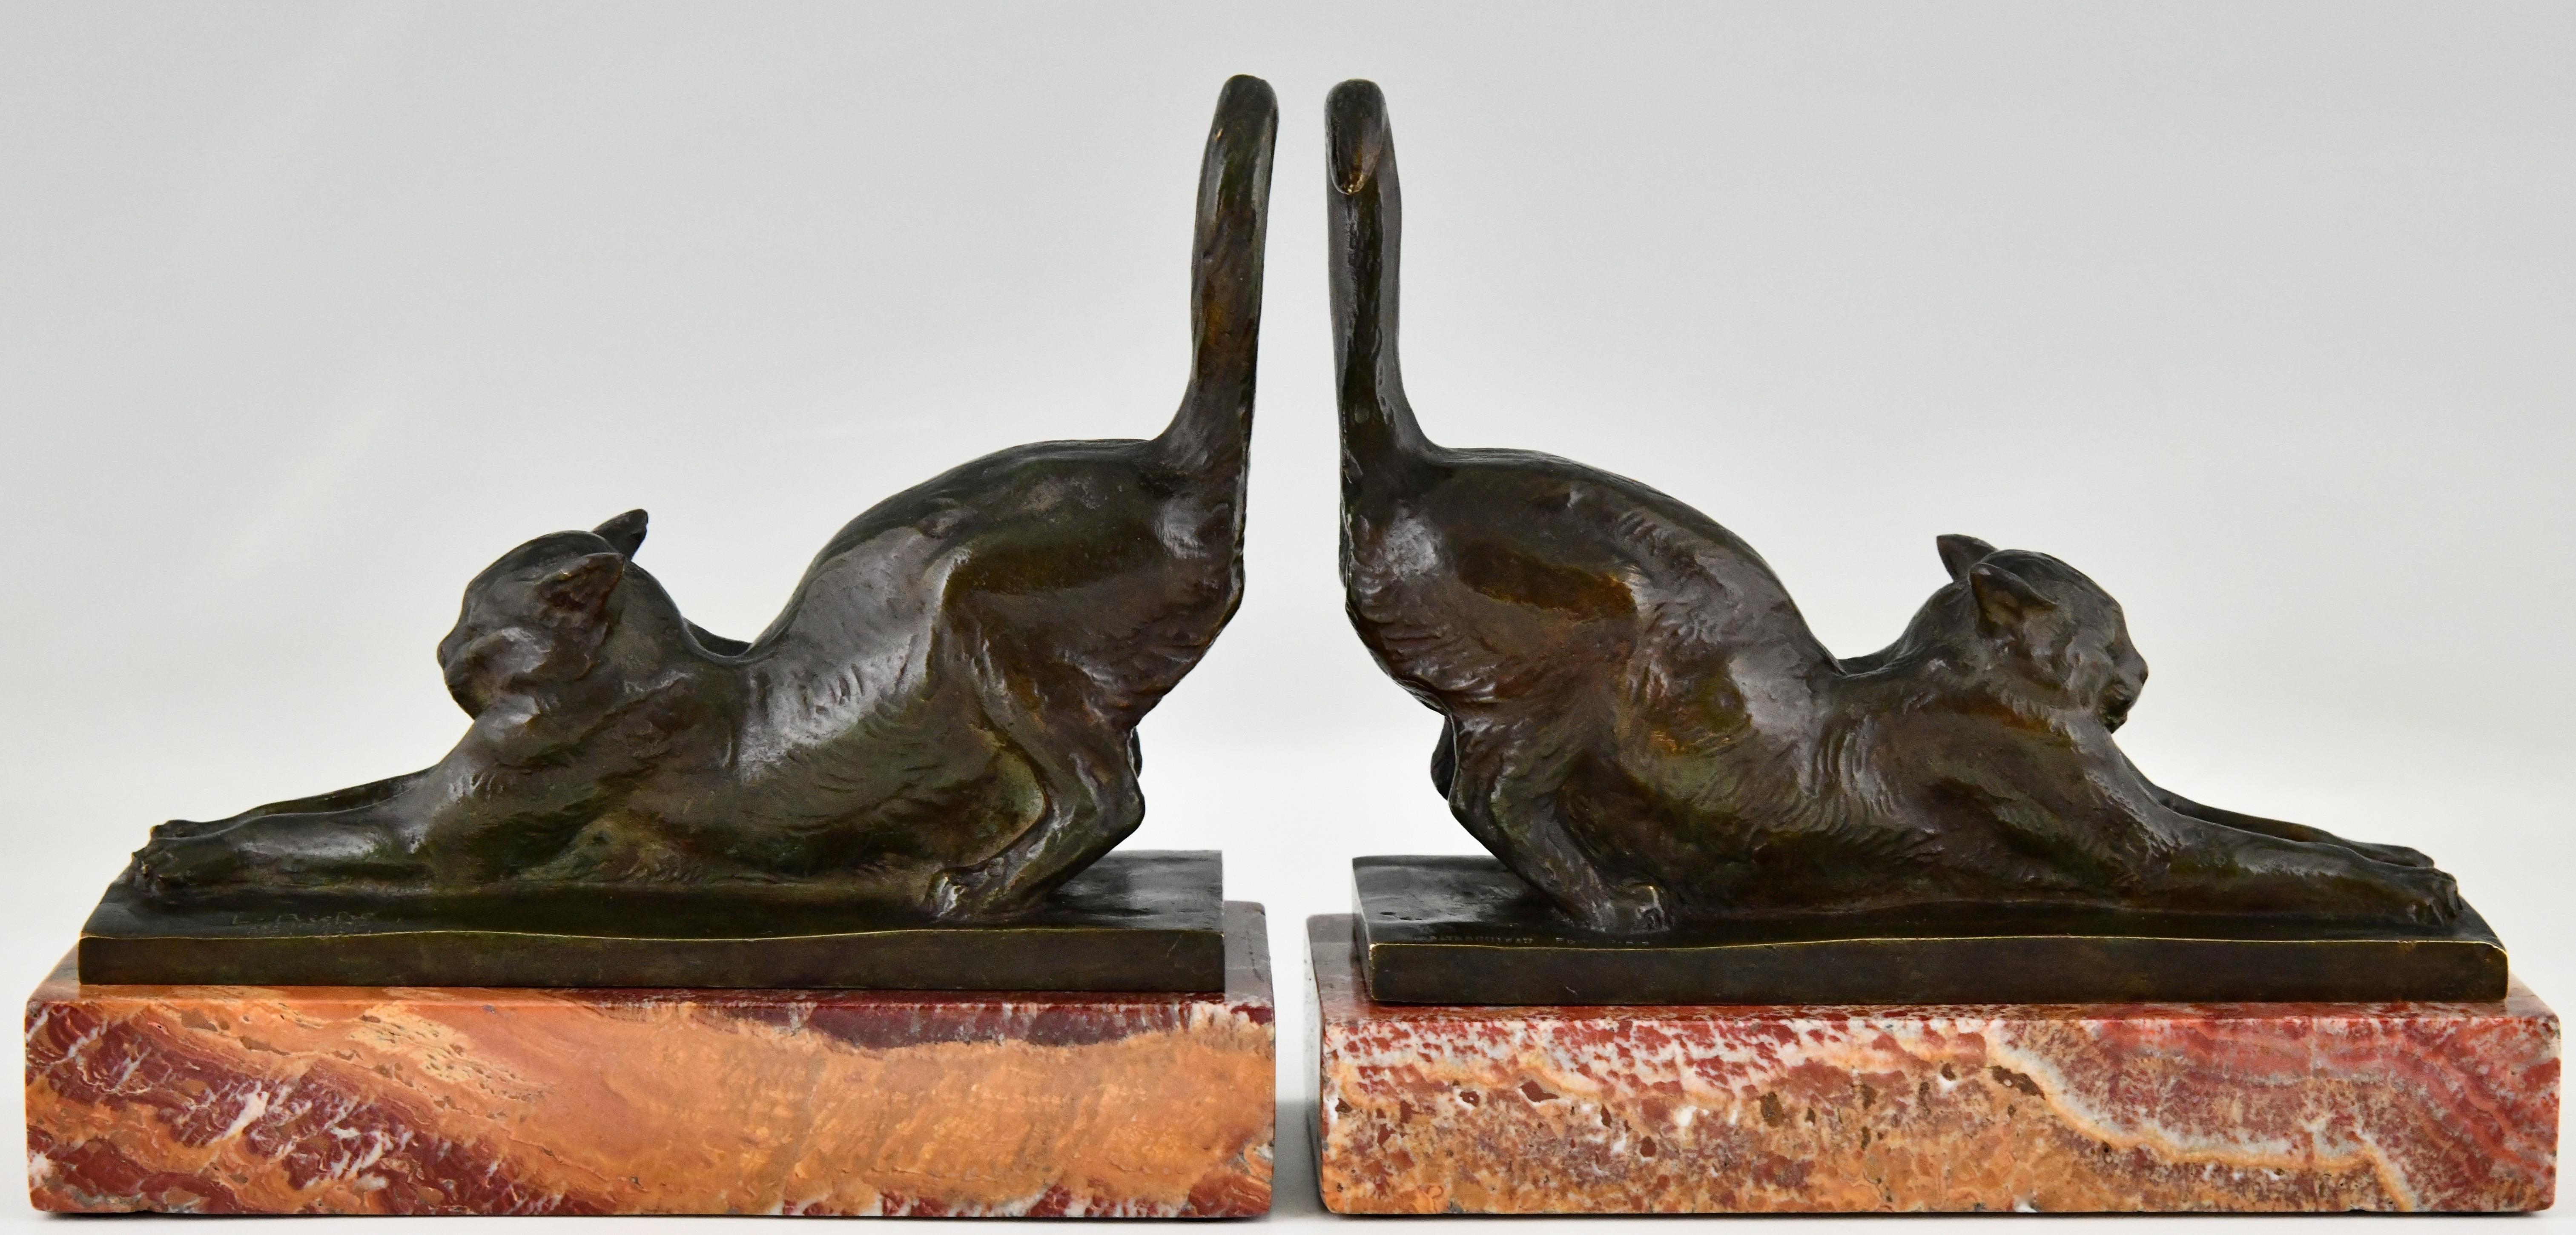 Très belle paire de serre-livres Art Déco en bronze avec des chats qui s'étirent sur une base en marbre noir. La paire est signée par Louis Riche (1877-1949), un célèbre animalier français spécialisé dans les sculptures de chats.
Signé, marque de